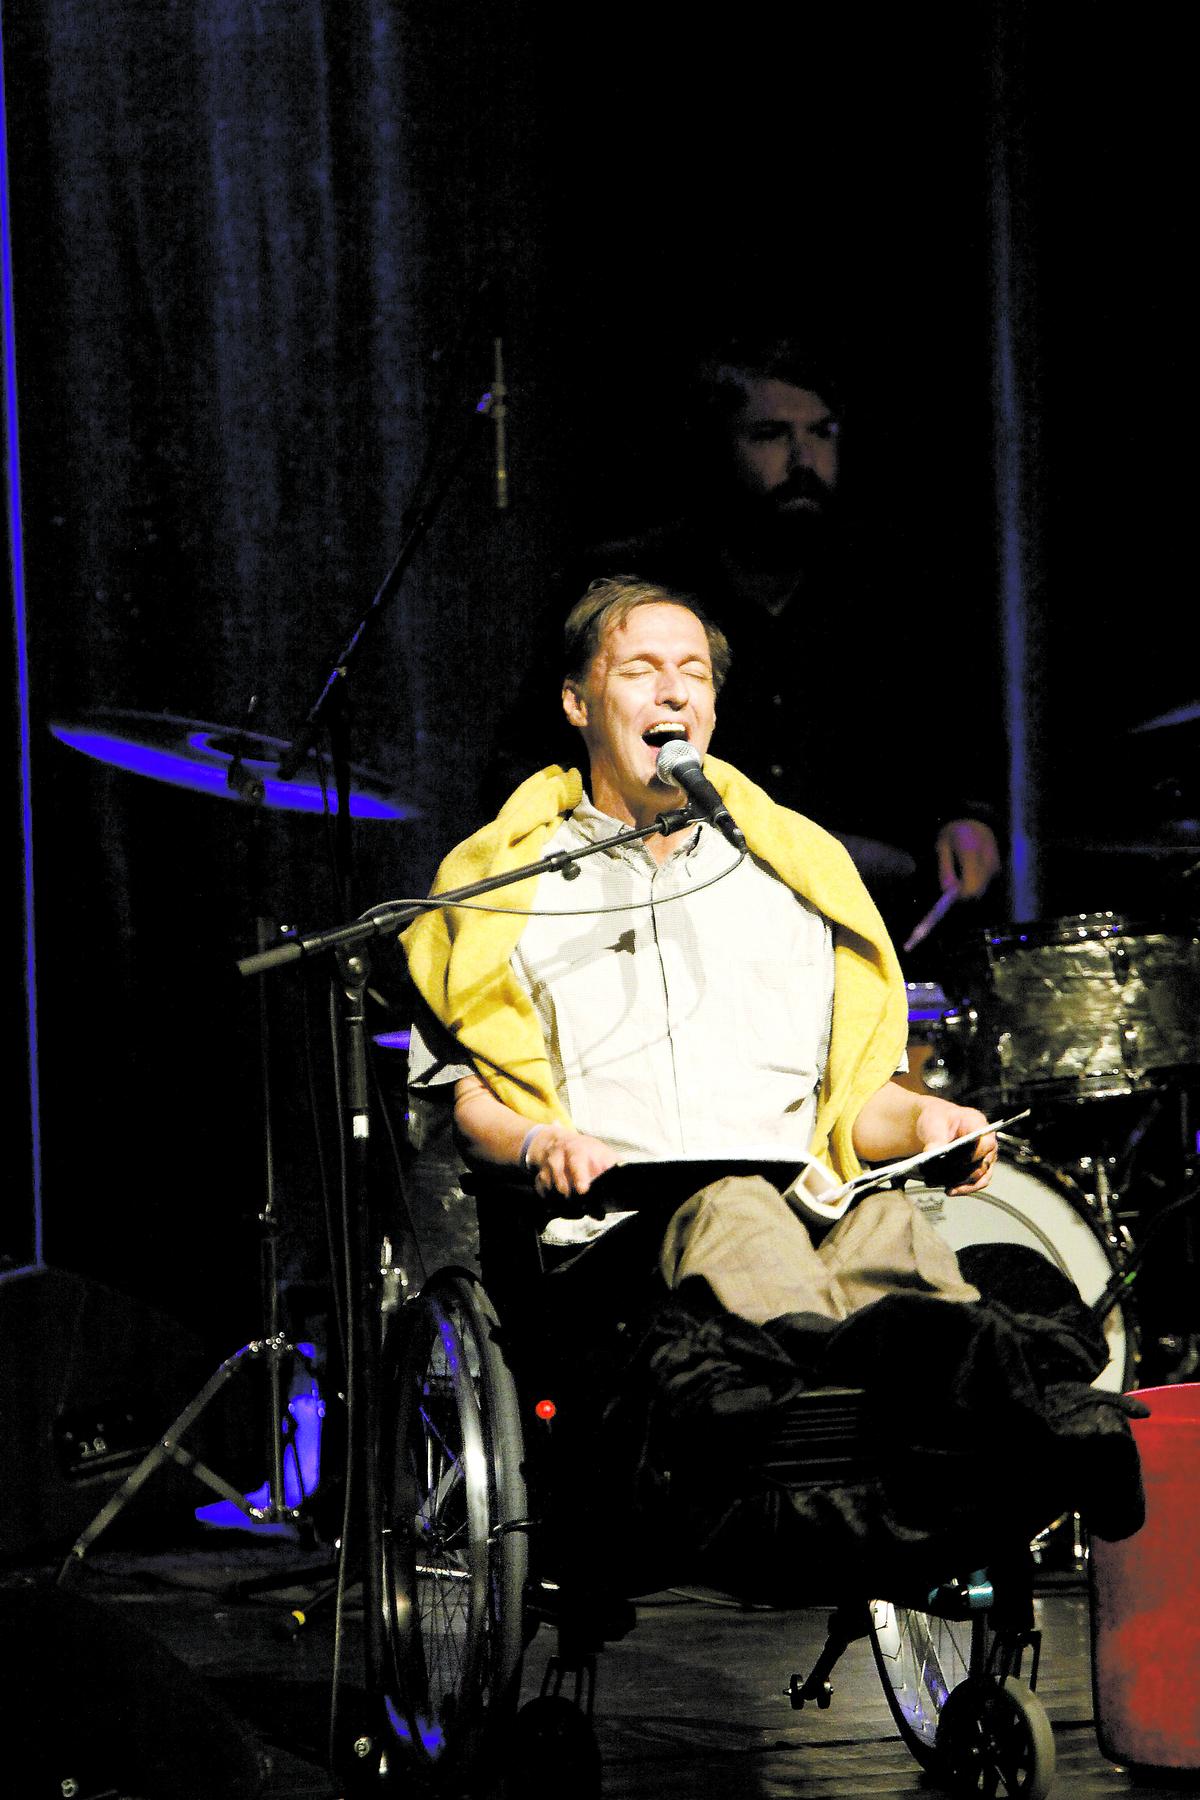 Trots att Olle Ljungström hade fötterna i bandage och sjöng ur en pärm sprakade det på scenen 2011.